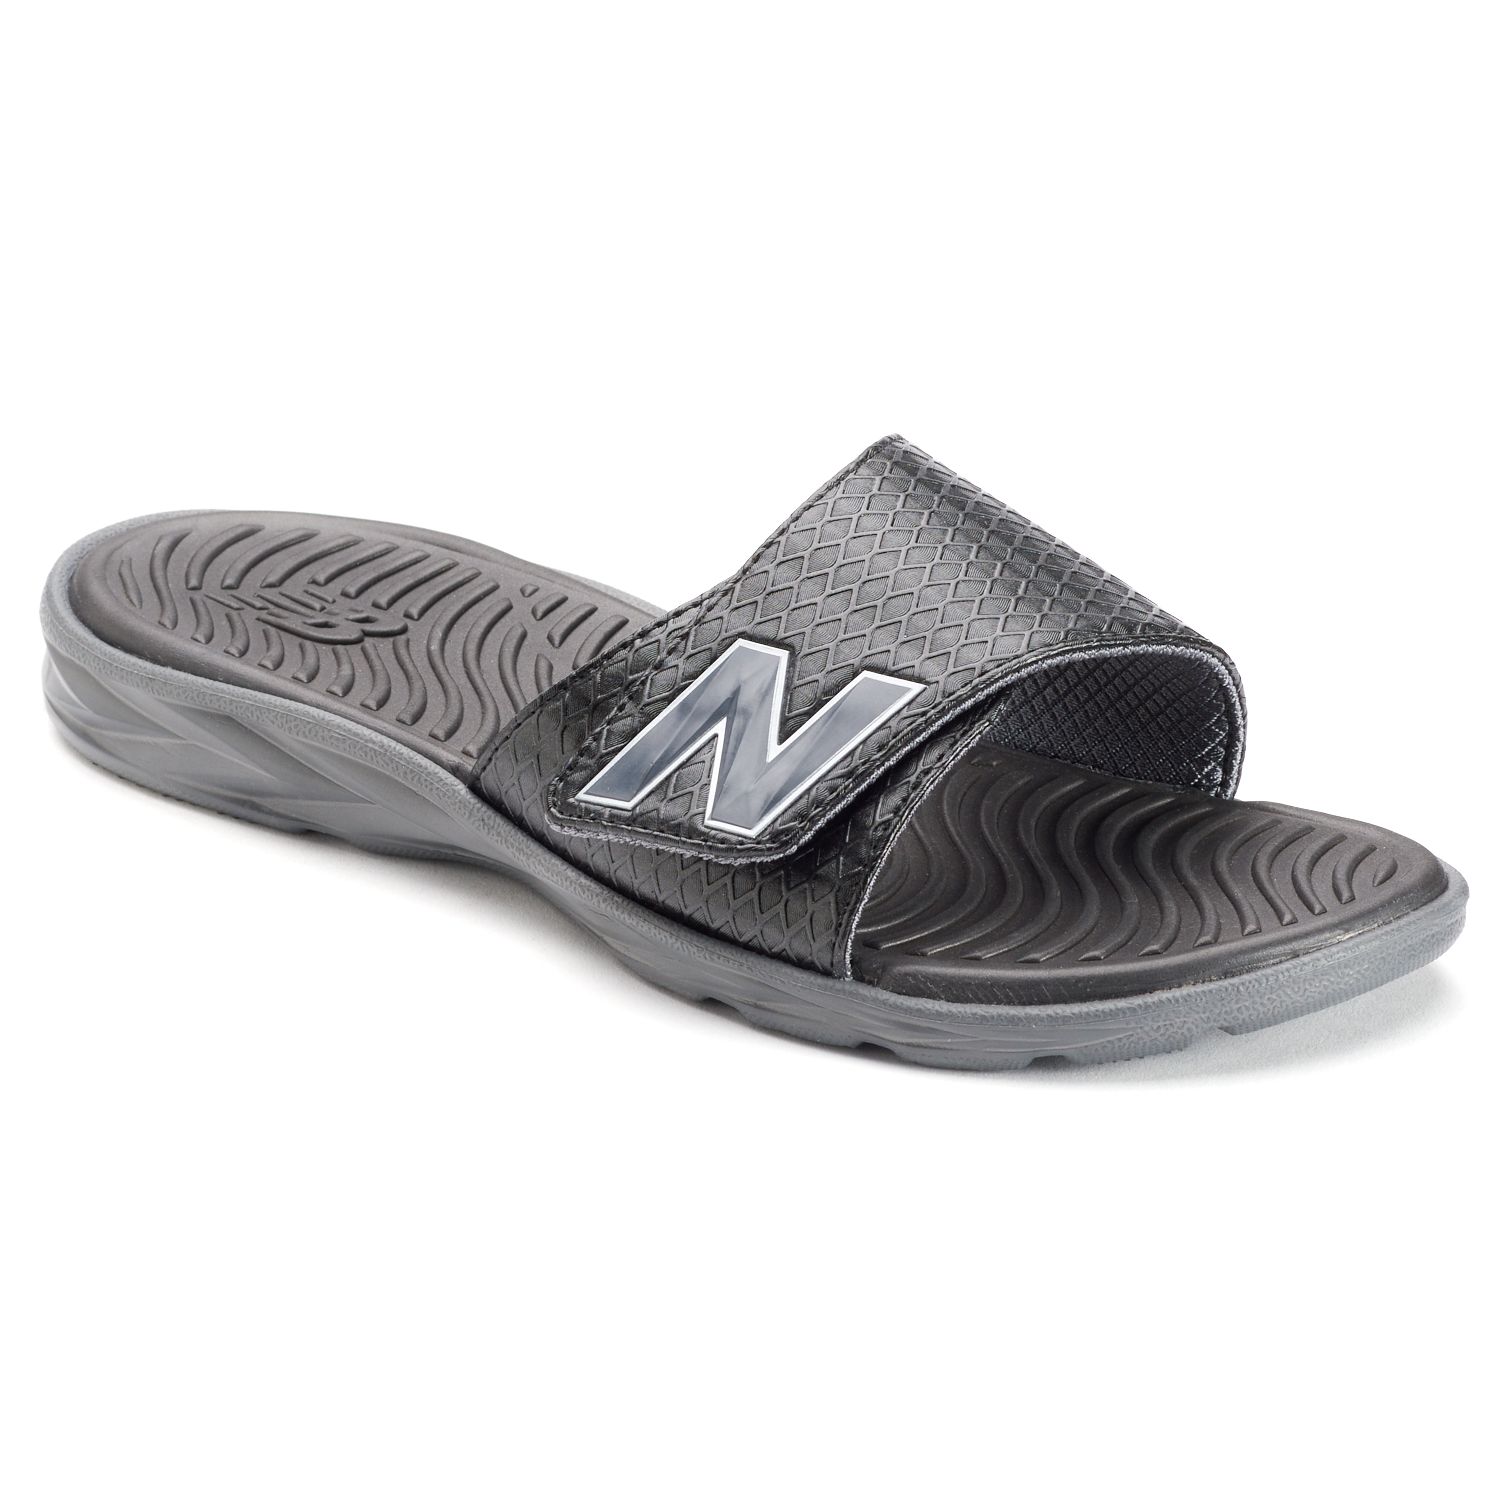 New Balance Response Men's Slide Sandals